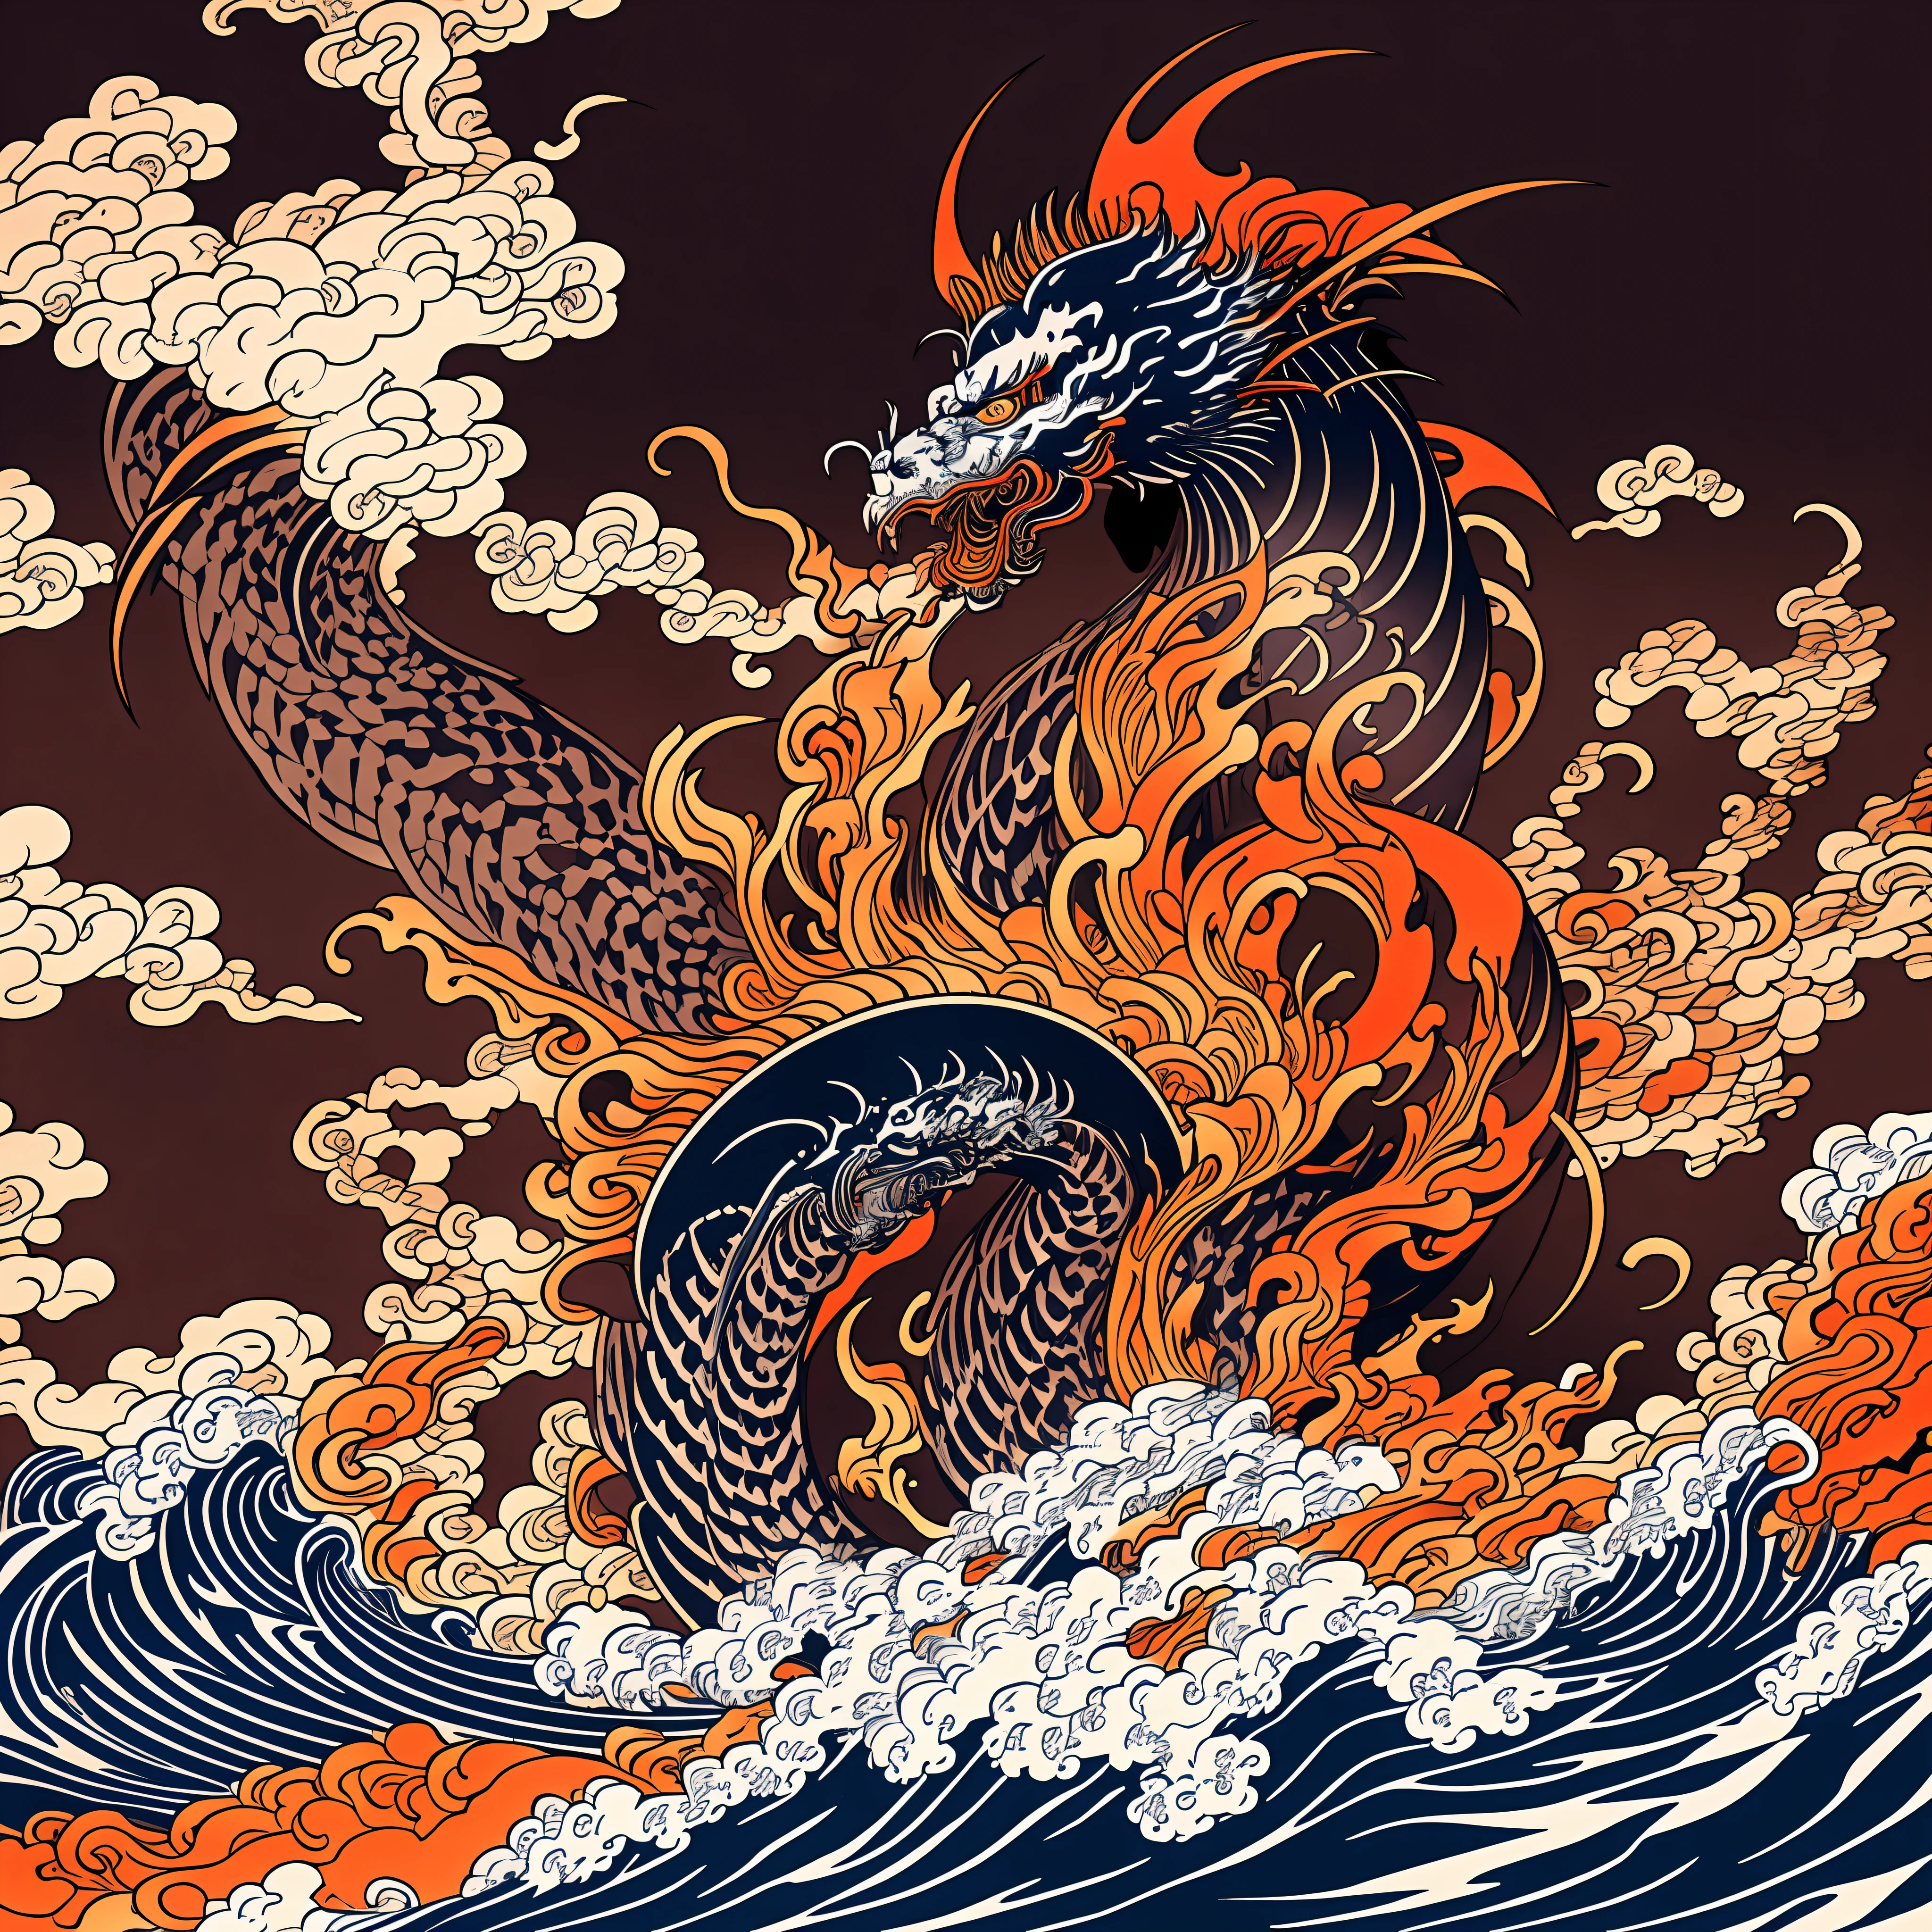 Strichzeichnungen im Katsushika-Hokusai-Stil, Dunkelrot im Hokusai-Stil, zinnoberrotes Flammenmusterdesign. Drache in Form einer riesigen Flamme, In bester Qualität, masterpiece high resolution Ukiyo-e-Stil. künstlerischer Stil, 1:1, Ukiyo-e-Stil, 3D-Vektorgrafiken, Adobe Illustrator, 4K-Auflösung, wunderschöne Hintergründe nur